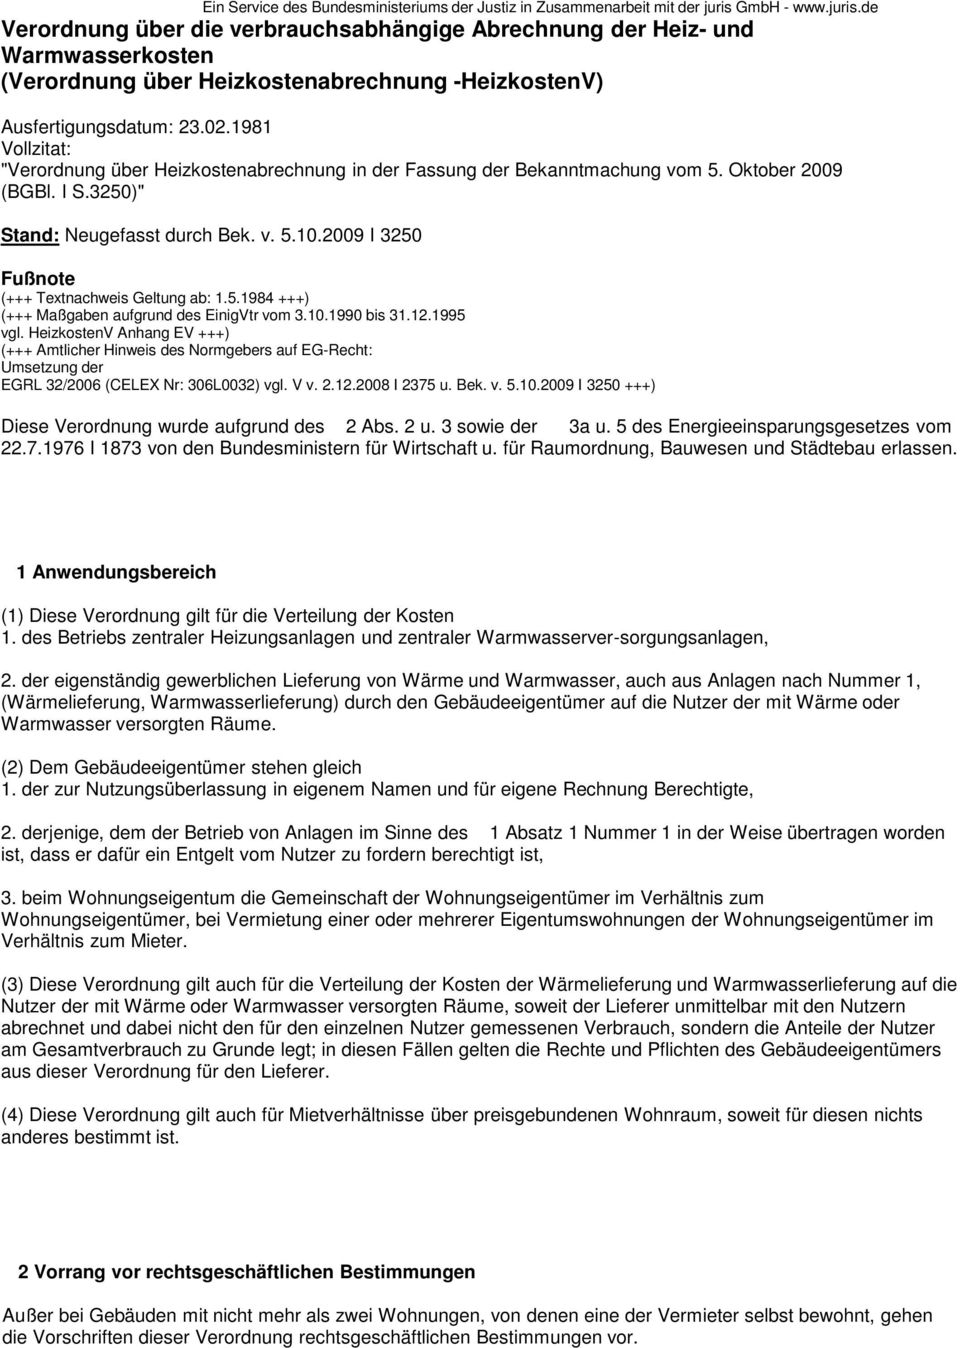 1981 Vollzitat: "Verordnung über Heizkostenabrechnung in der Fassung der Bekanntmachung vom 5. Oktober 2009 (BGBl. I S.3250)" Stand: Neugefasst durch Bek. v. 5.10.